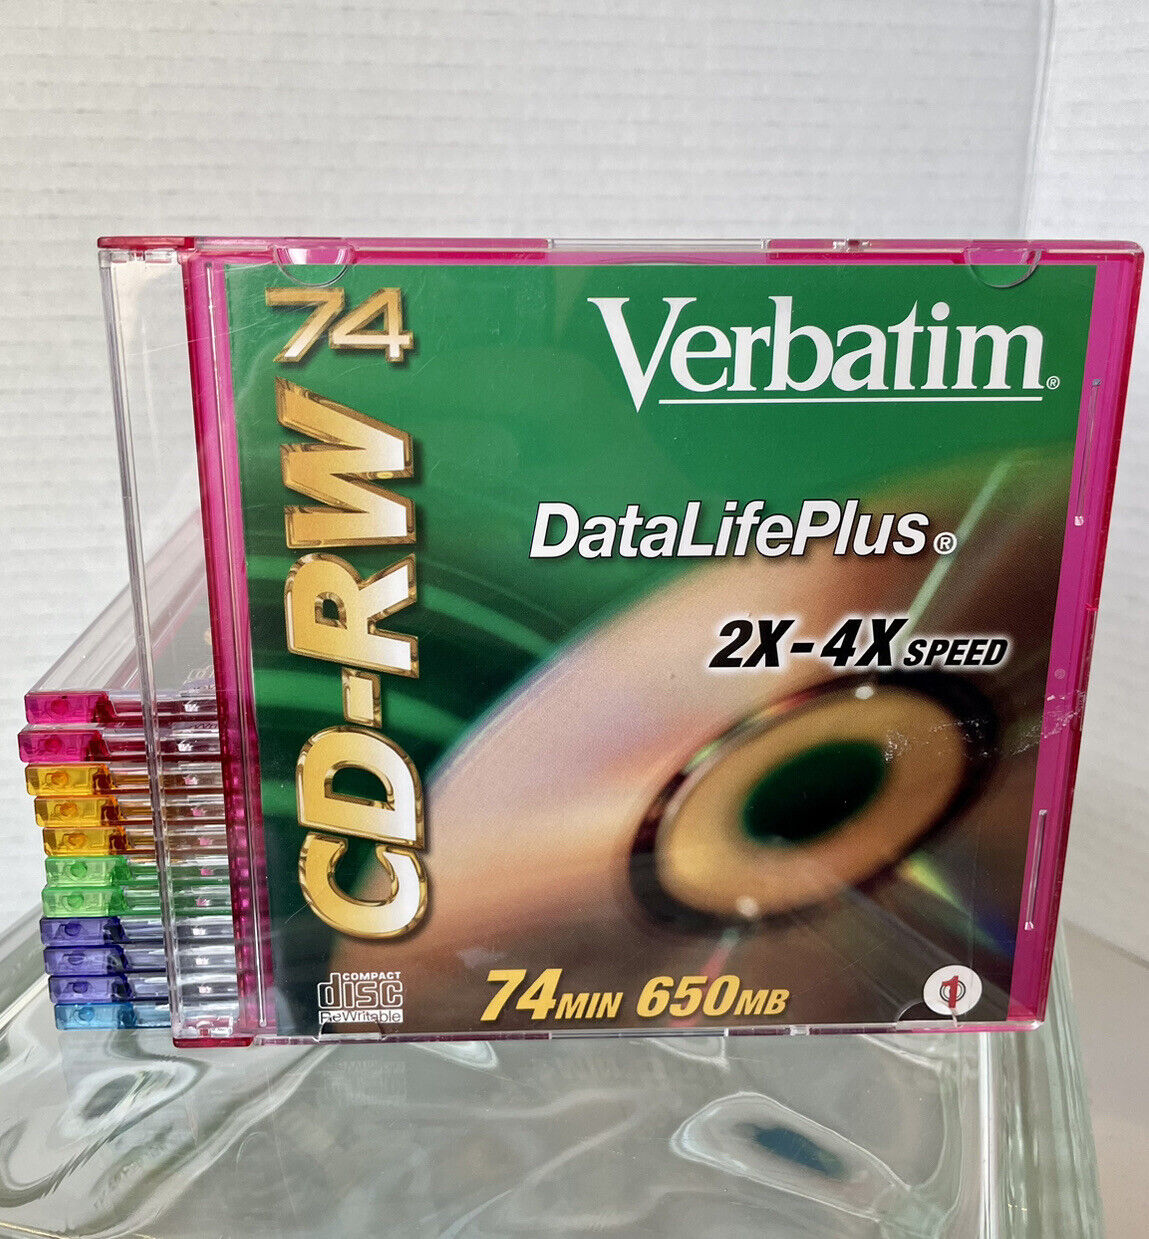 Verbatim Lot Of 12 CD-RW 74 Min DataLifePlus 2X-4X Speed Slim Jewel Cases 650 MB